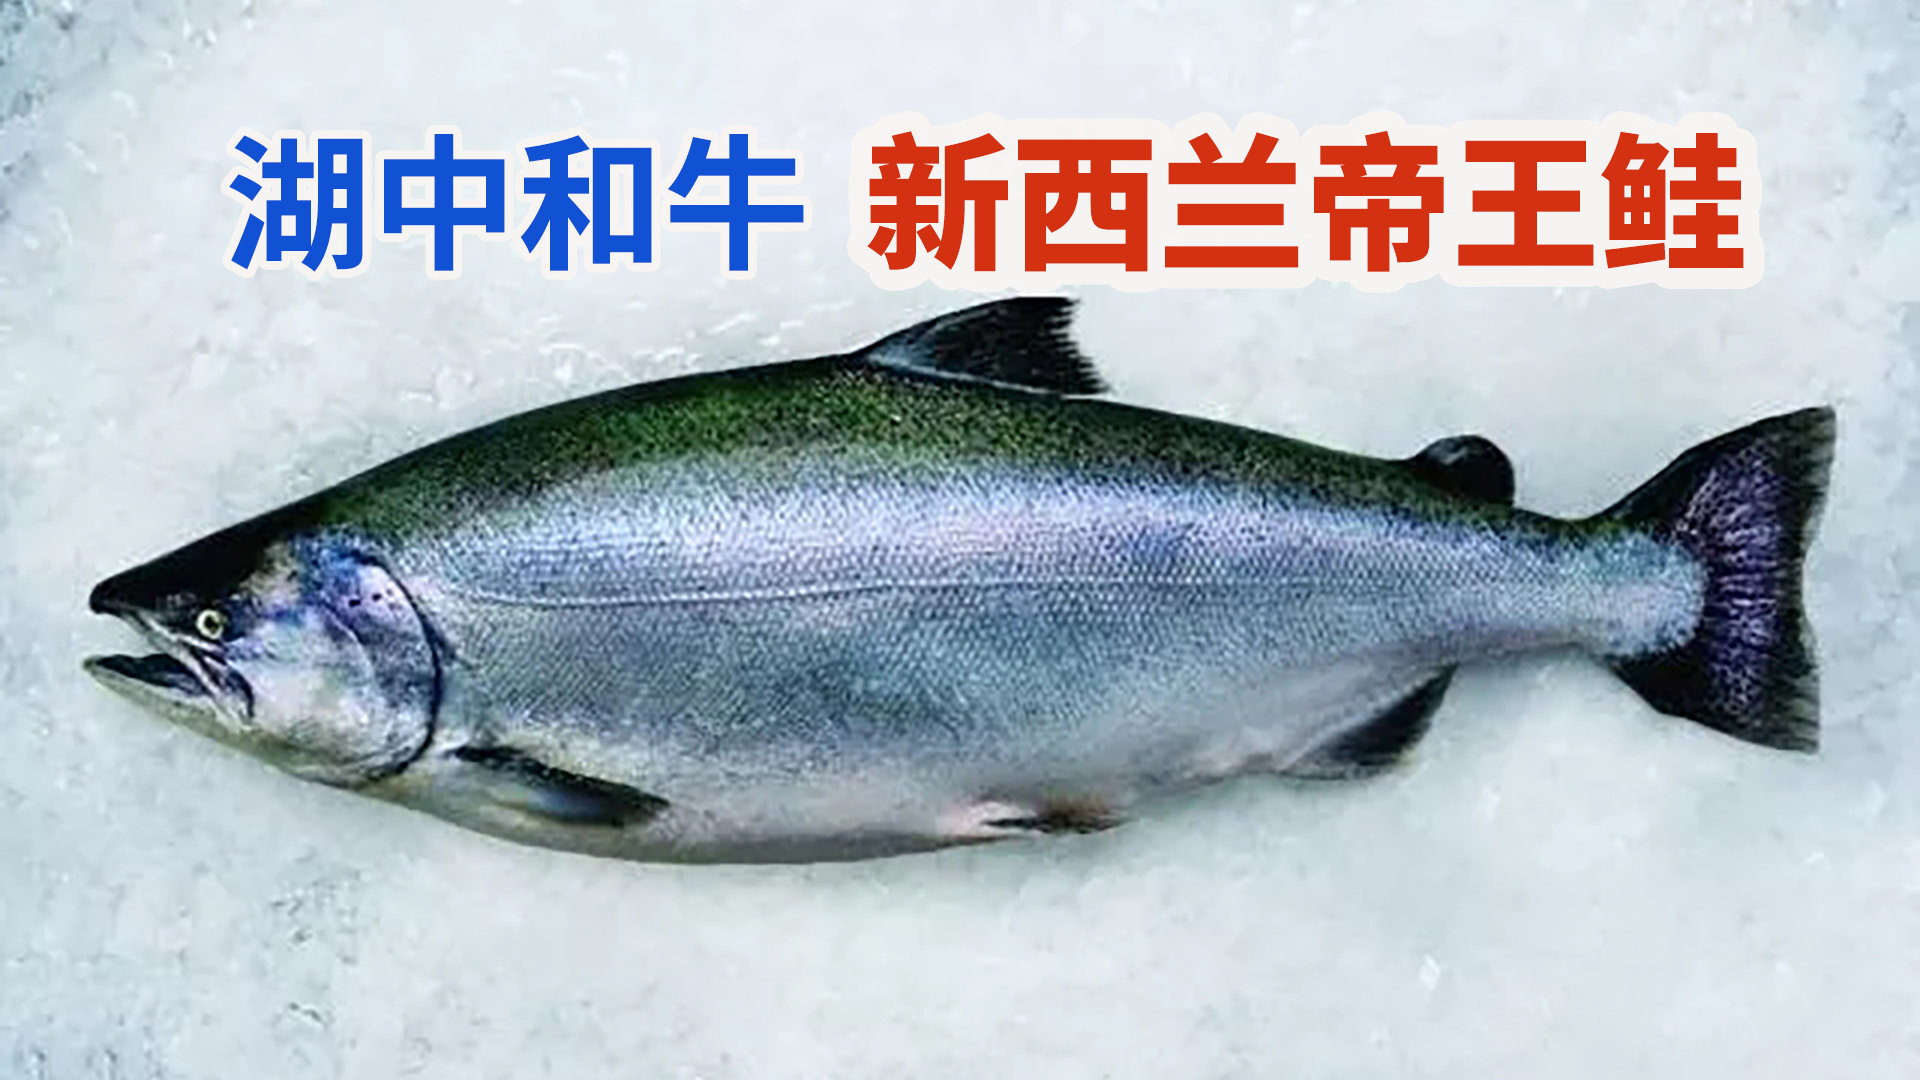 七彩鲑鱼自然繁殖方式_鱼之养_鱼花网